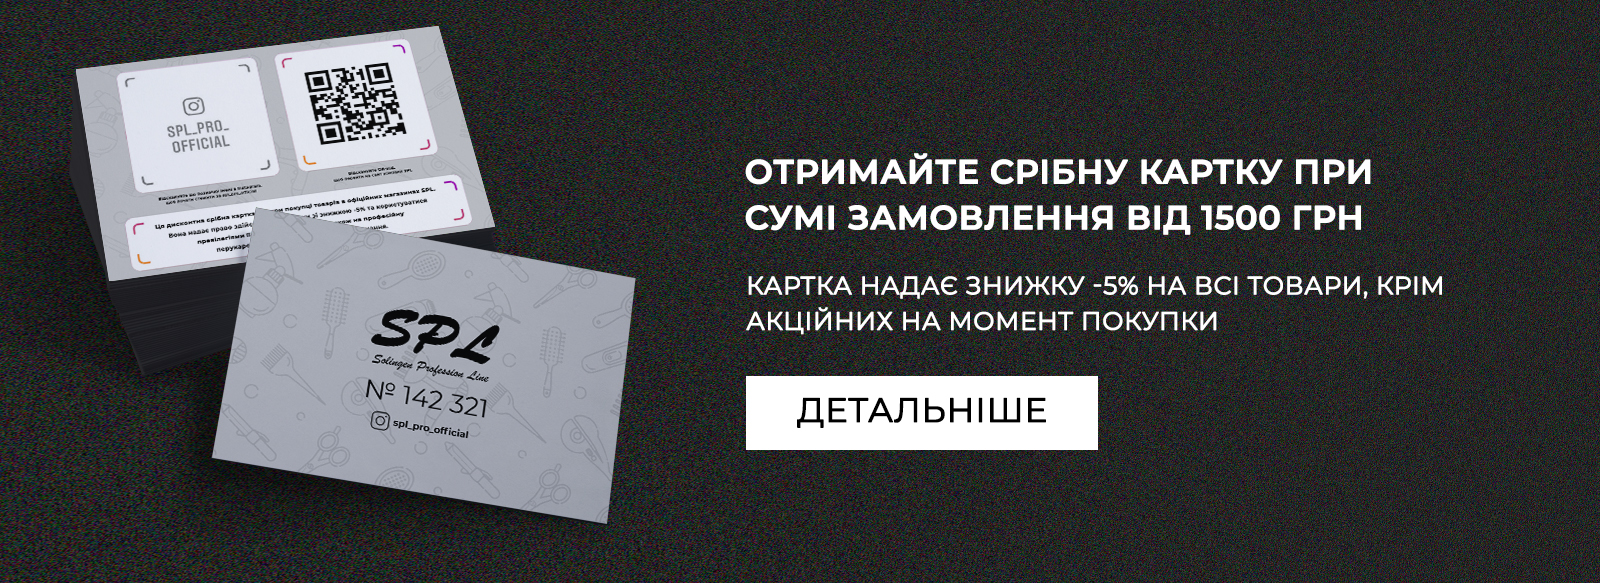 Отримайте срібну картку при сумі замовлення від 1500 грн 